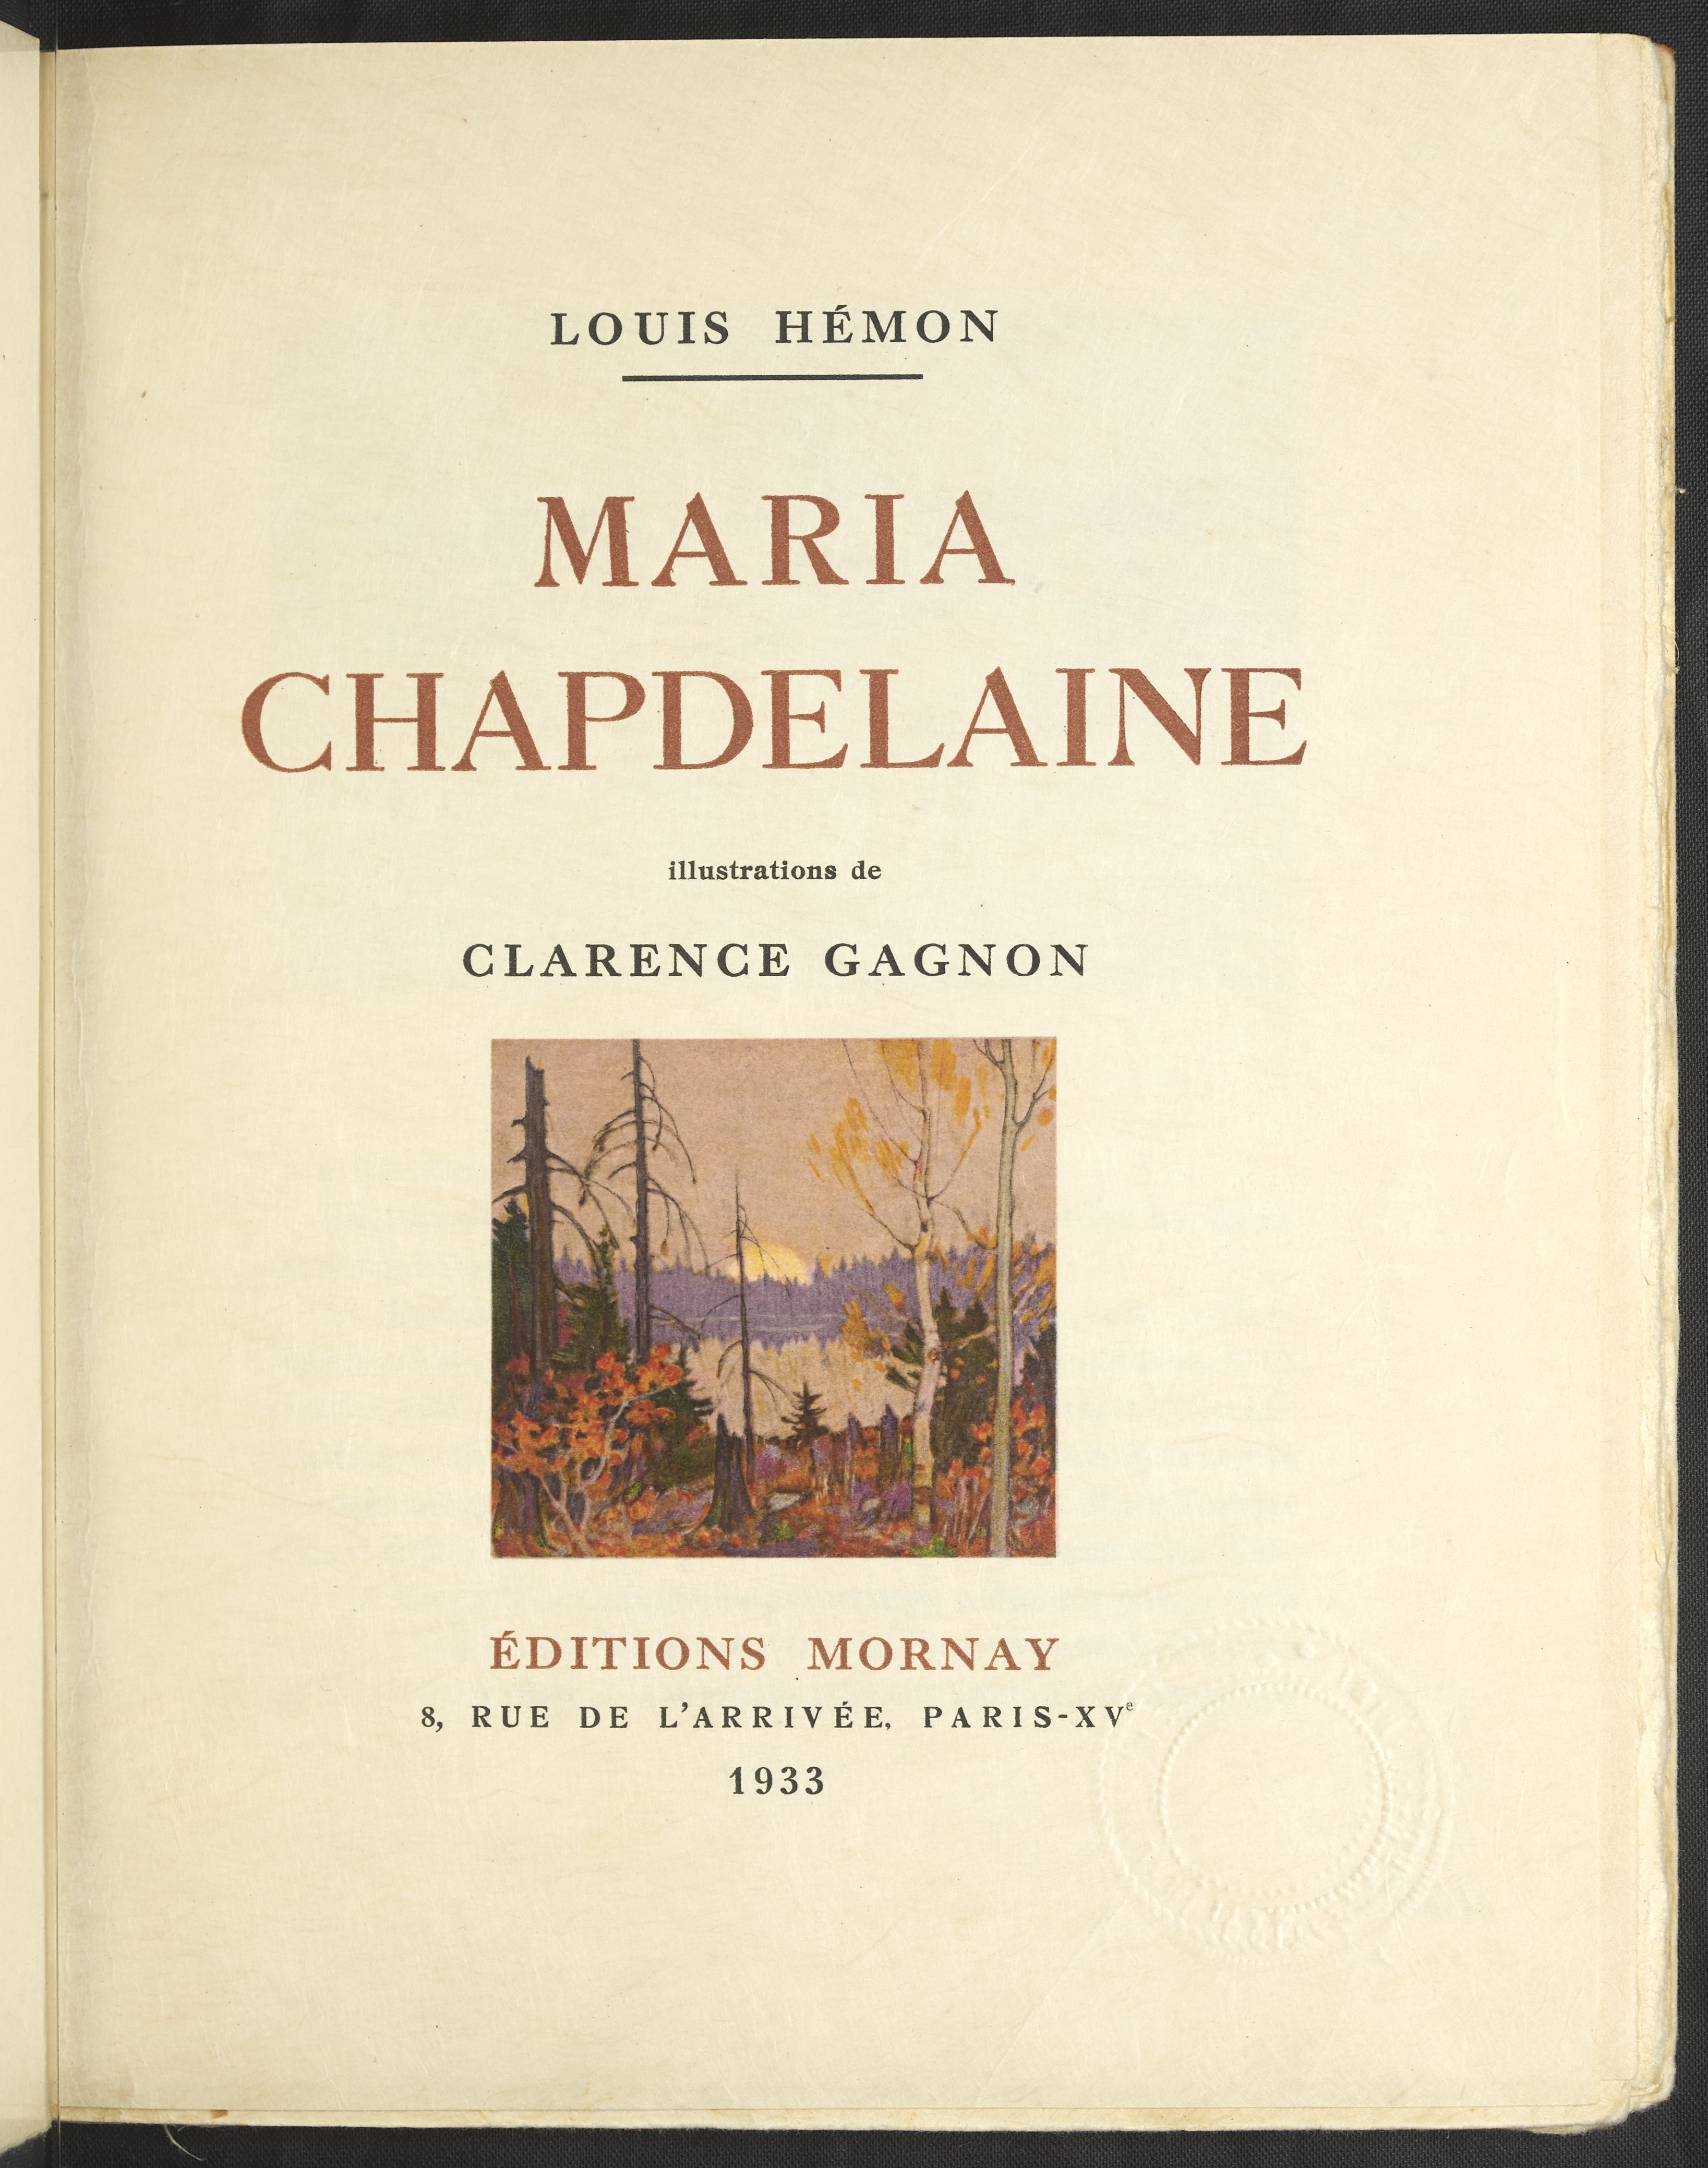 Page couverture du roman Maria Chapdelaine édité à Paris en 1933, ornée d'une illustration de Clarence Gagnon